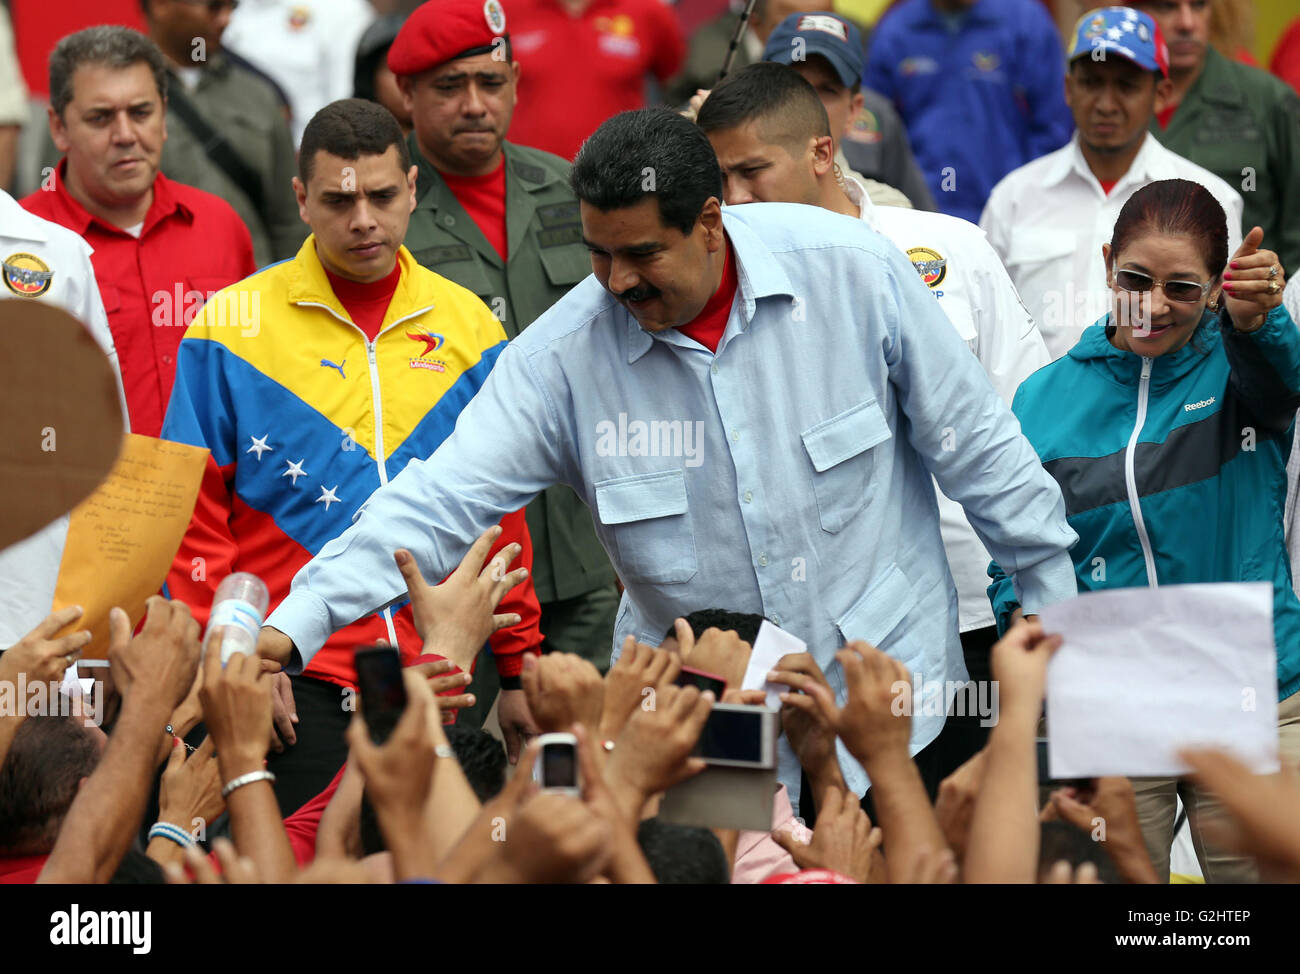 Caracas, Venezuela. El 31 de mayo, 2016. El Presidente de Venezuela, Nicolás Maduro, saluda a un grupo de personas durante una manifestación en apoyo a su gobierno en Caracas, Venezuela, el